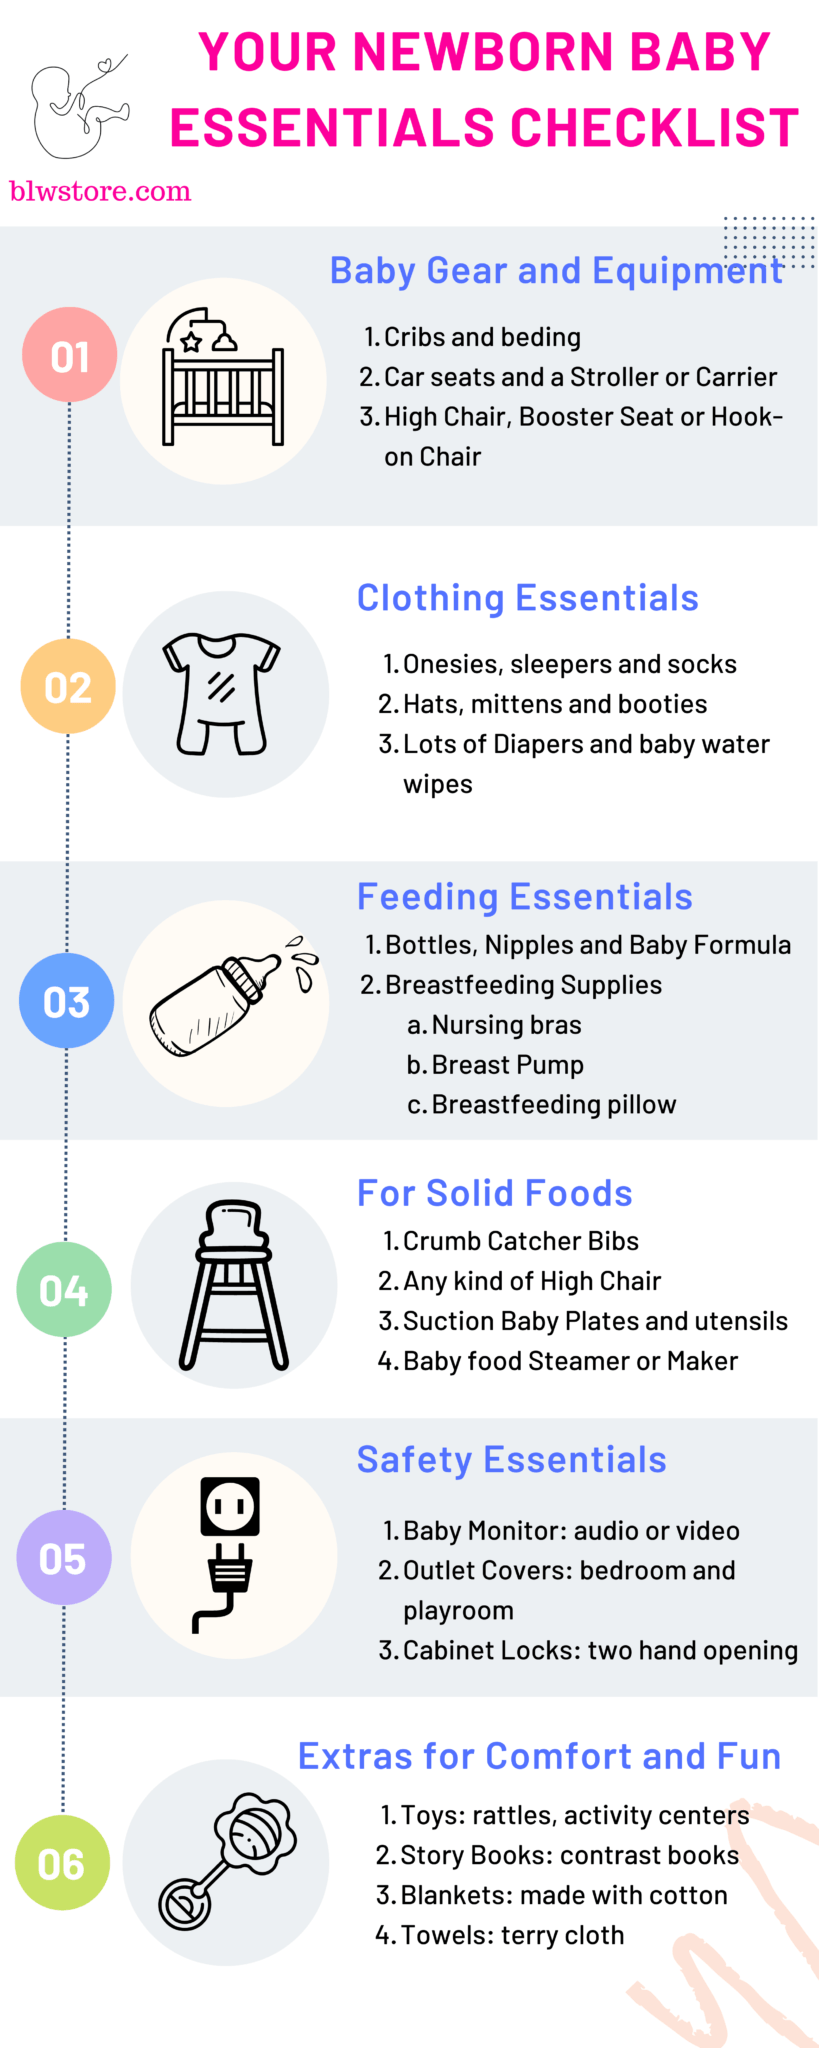 Newborn baby essentials list